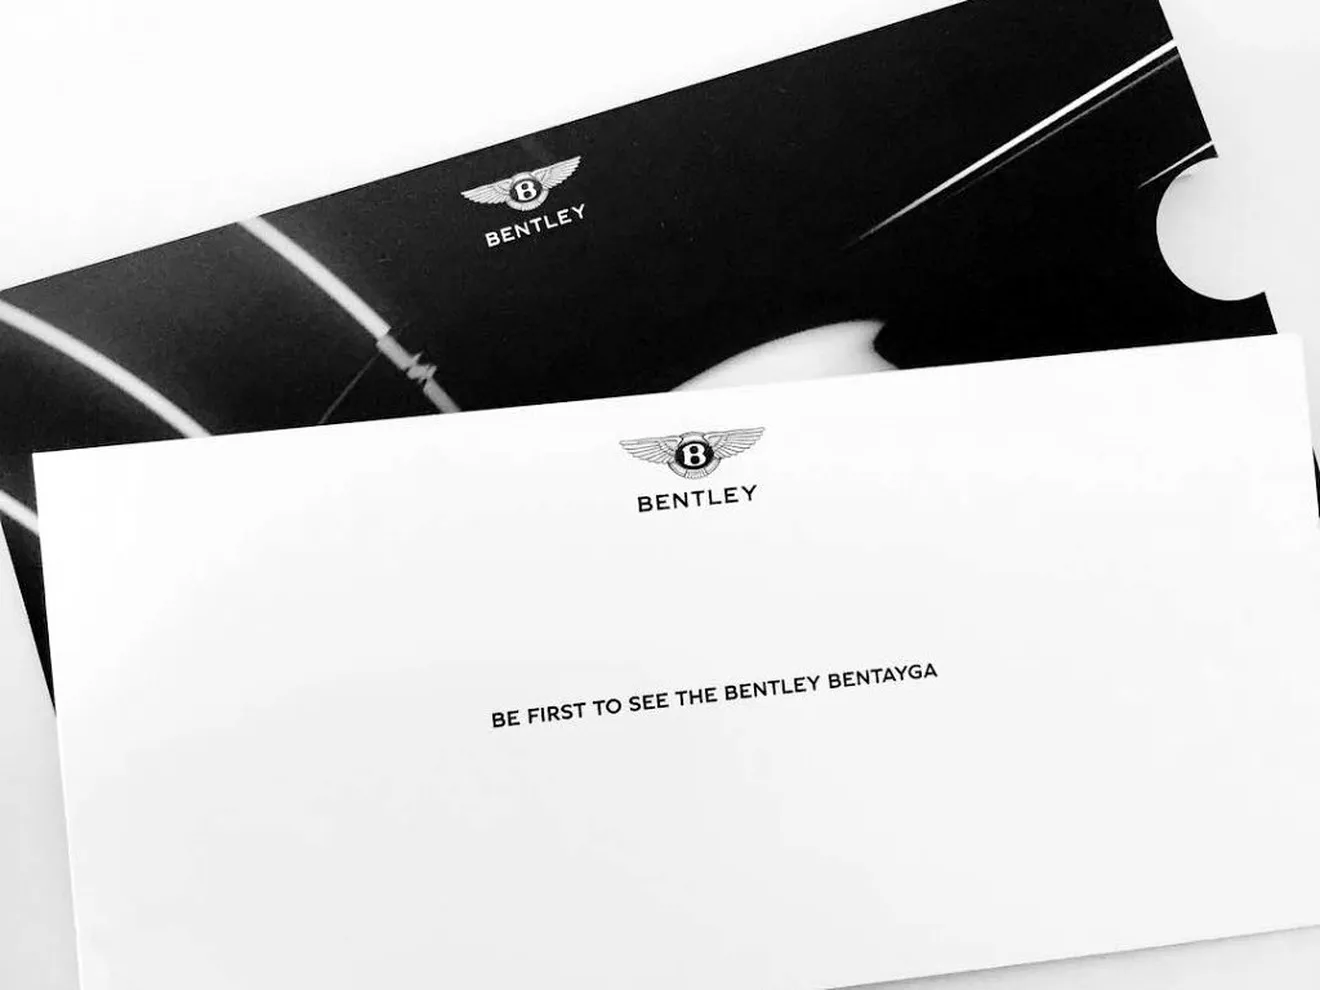 Los primeros clientes ya han visto el Bentley Bentayga